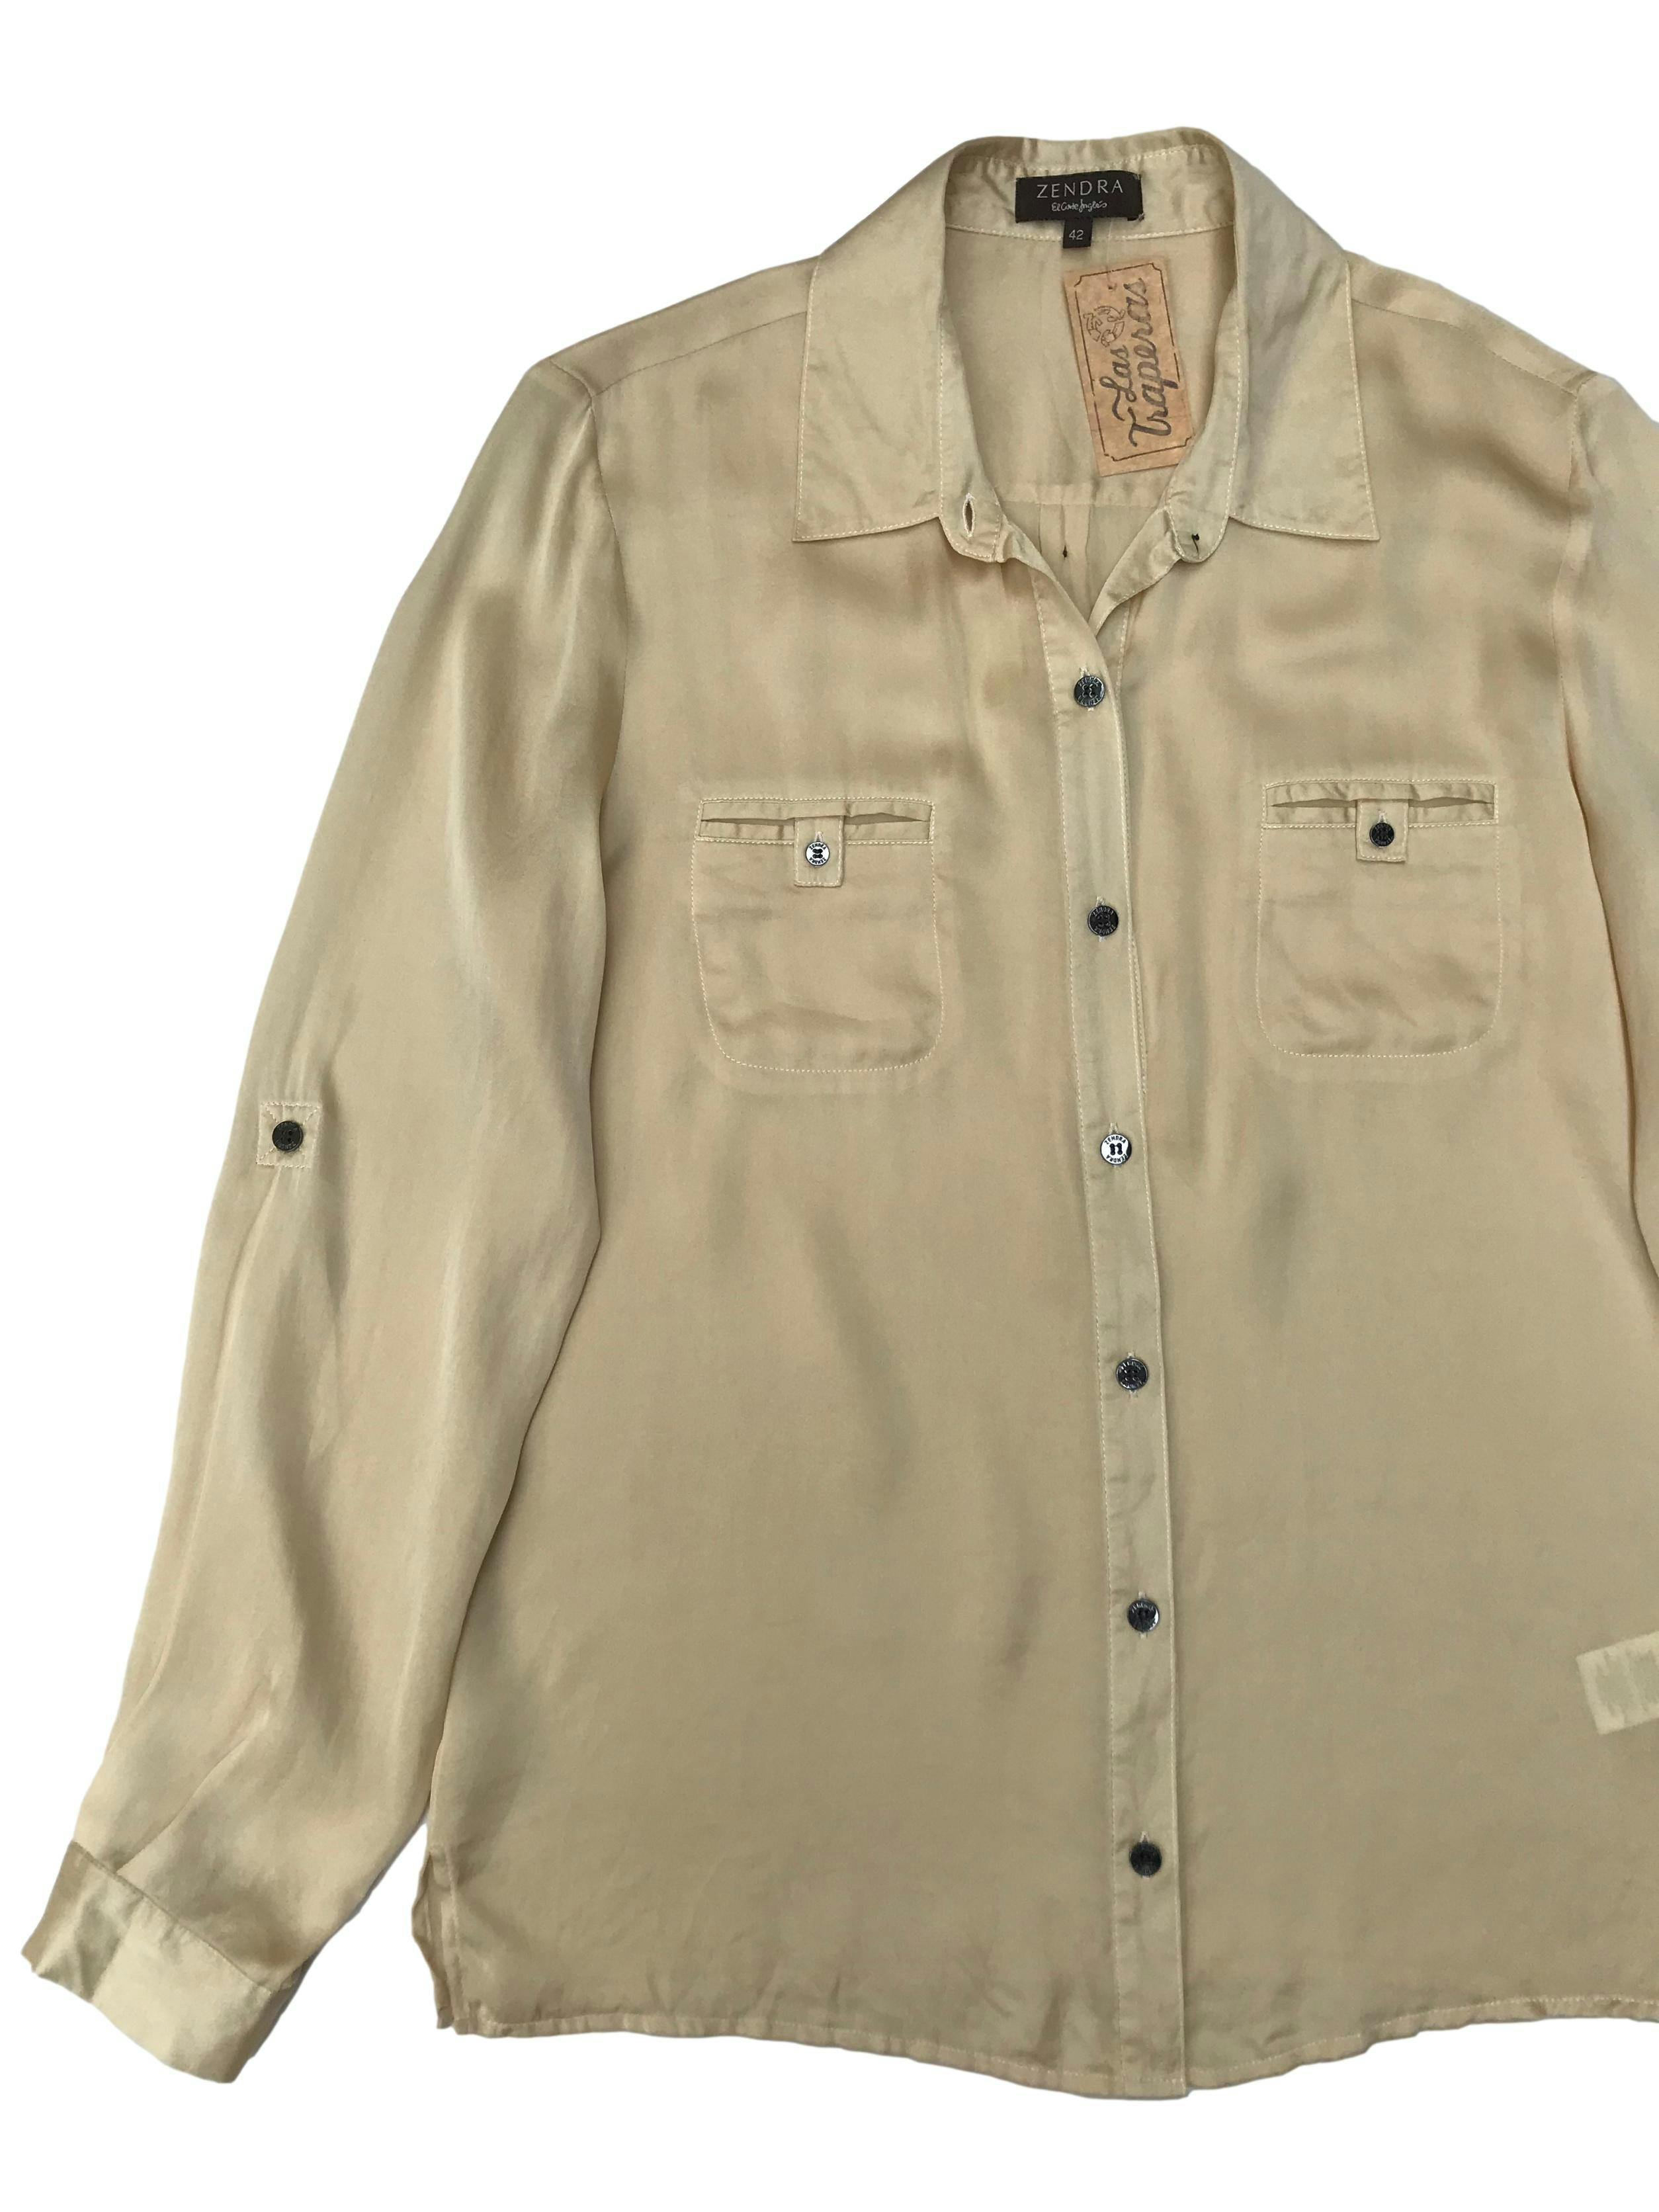 Blusa Zendra de El Corte Inglés, 100% seda dorada, modelo camisero con bolsillos en el pecho y mangas regulables con botón.